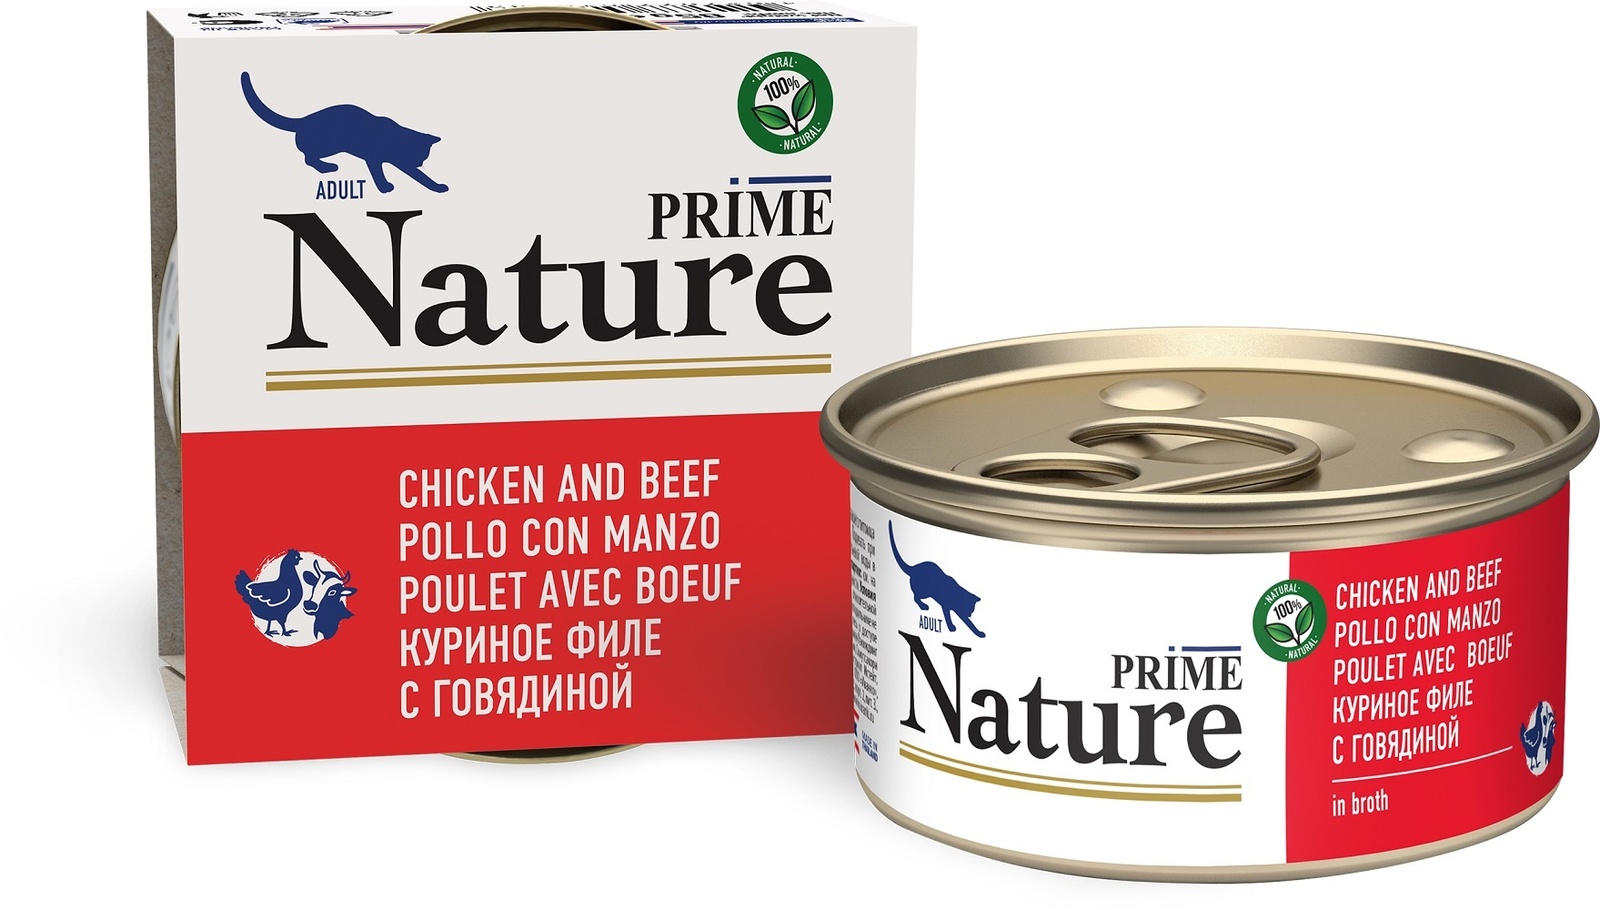 Prime Nature консервы для кошек: куриное филе с говядиной в бульоне (24 шт)